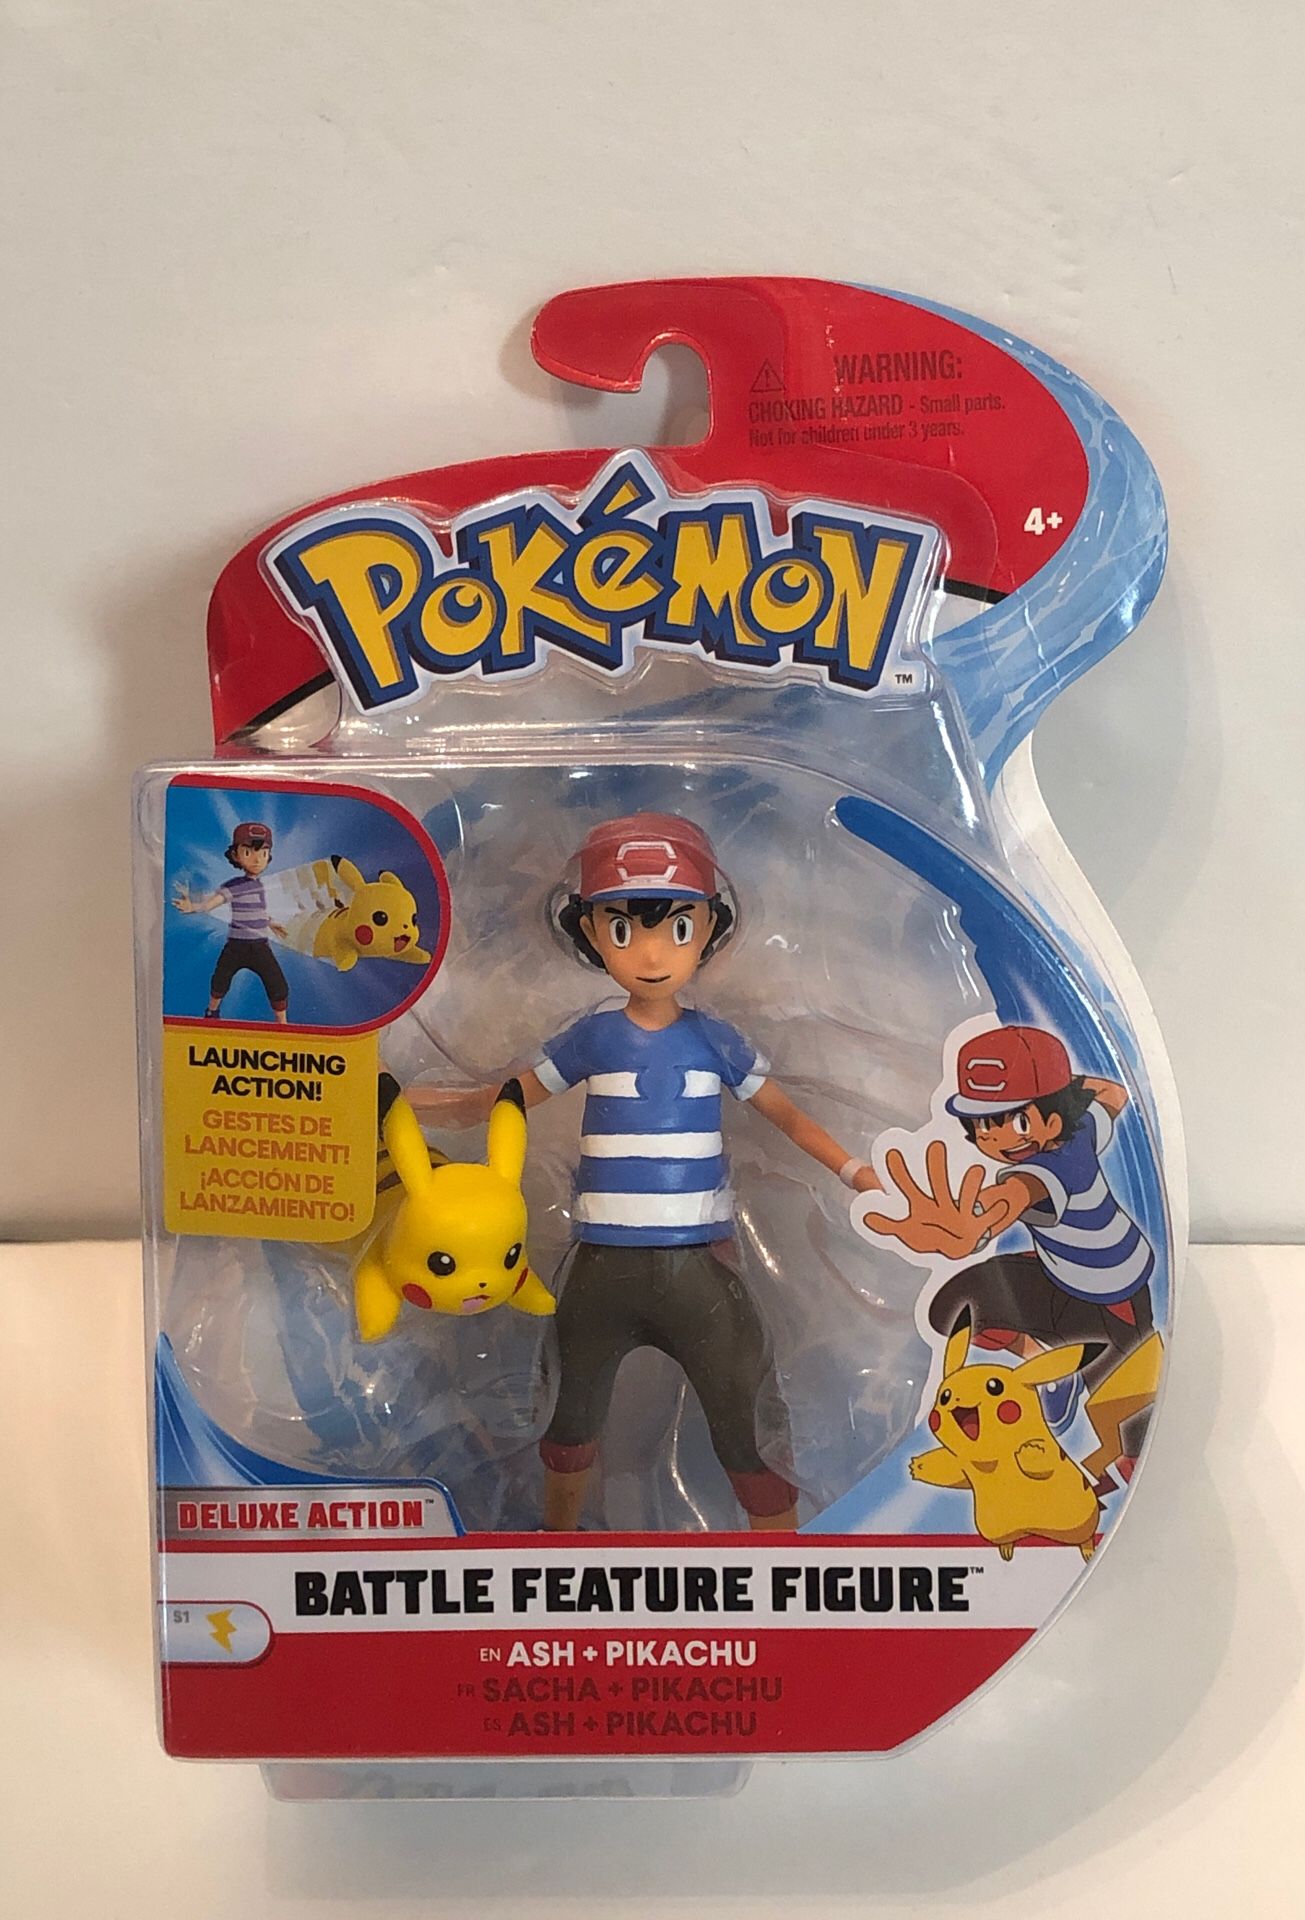 Pokémon Ash & Pikachu Deluxe Action Battle Feature Figure